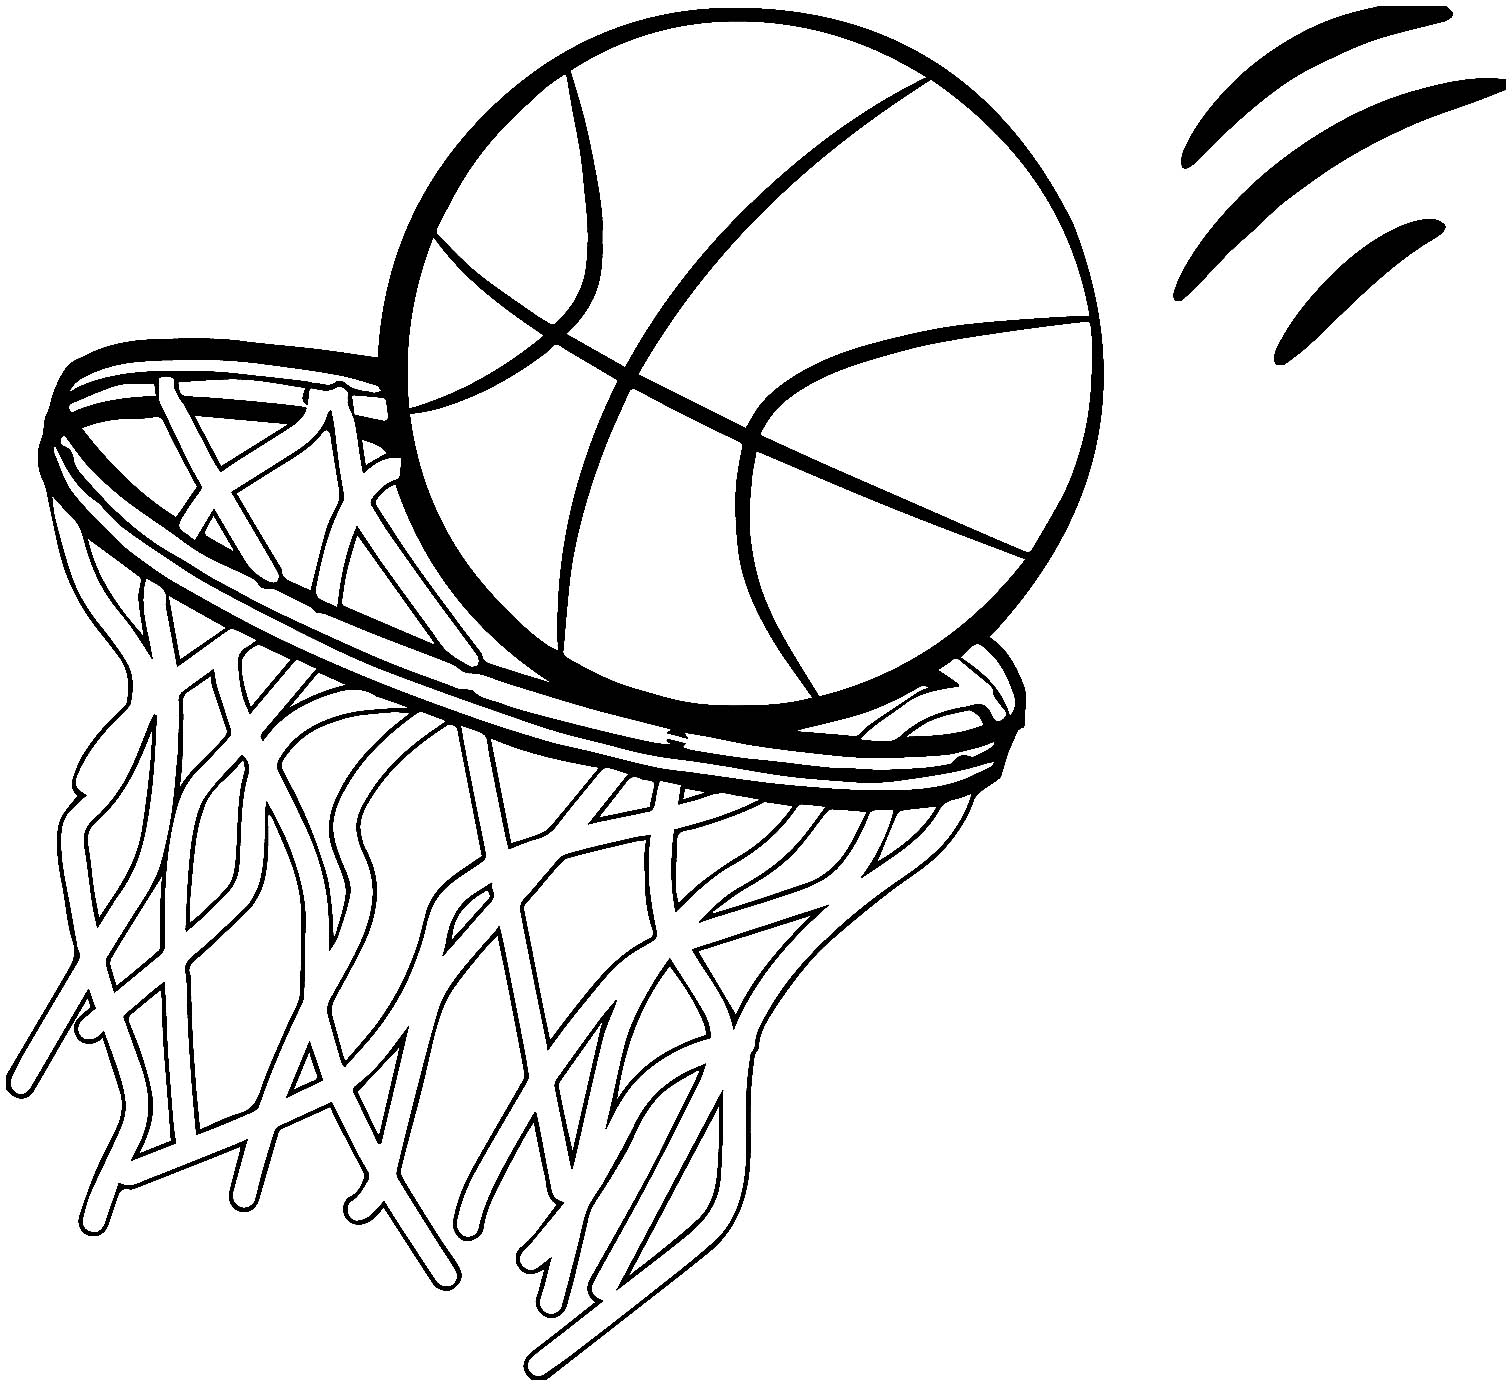 Préparez vos crayons et feutres pour colorier ce coloriage de basketball